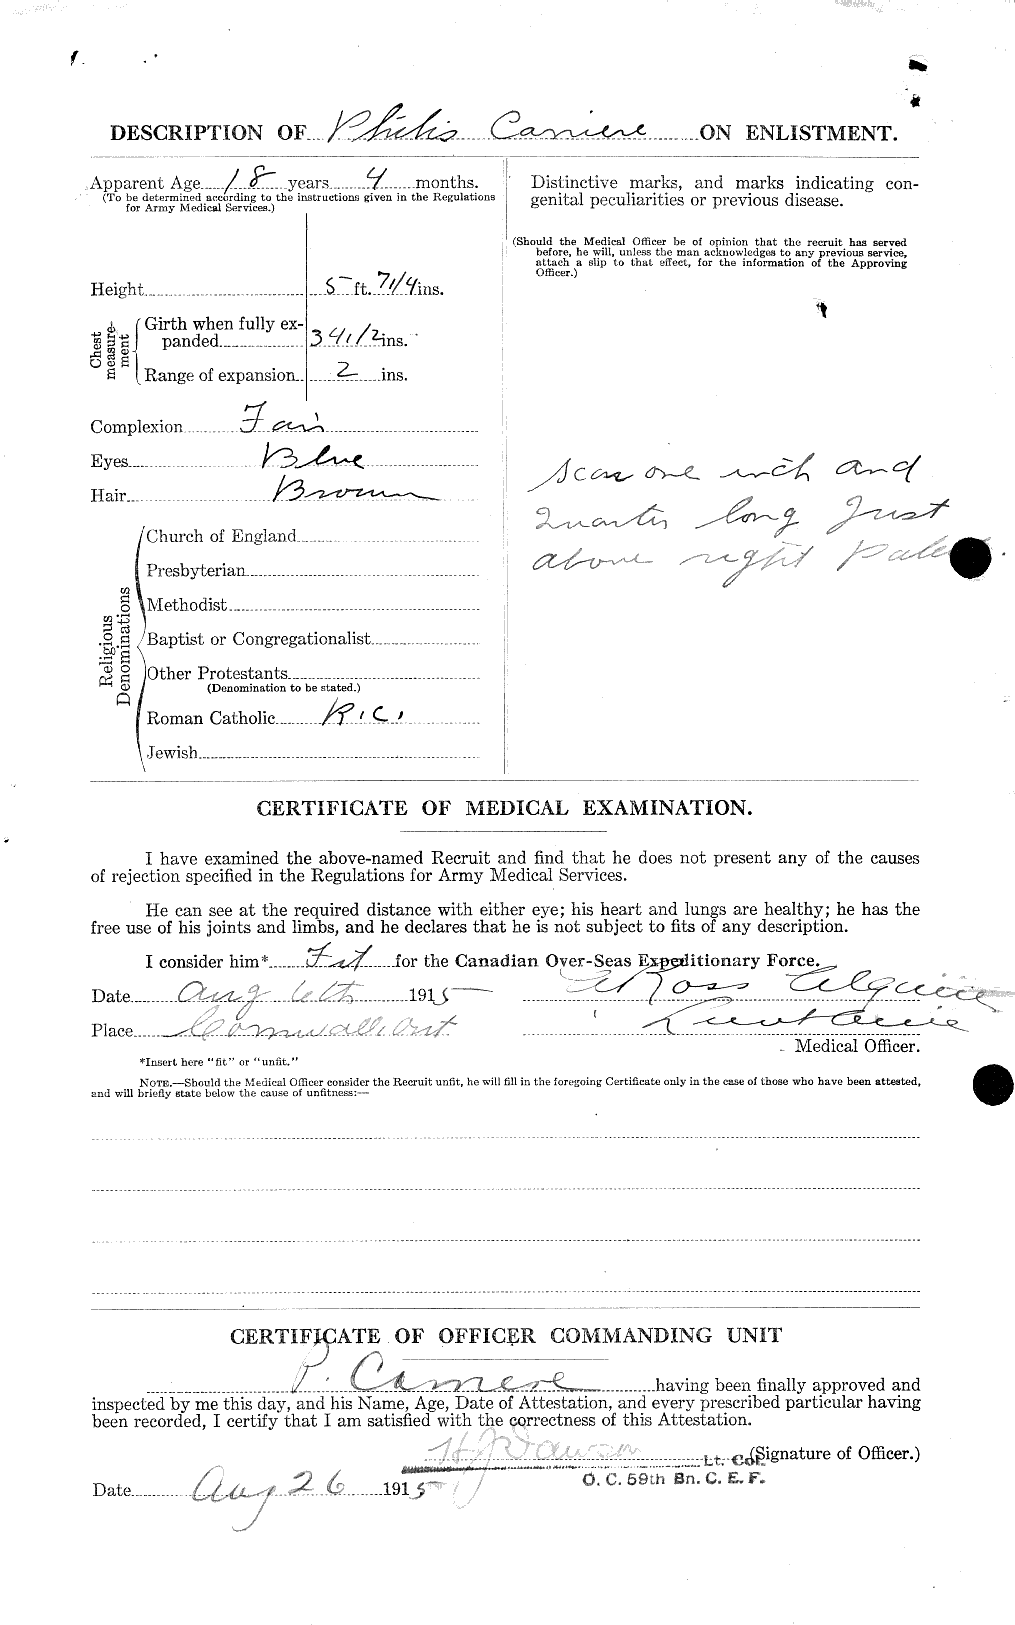 Dossiers du Personnel de la Première Guerre mondiale - CEC 005427b